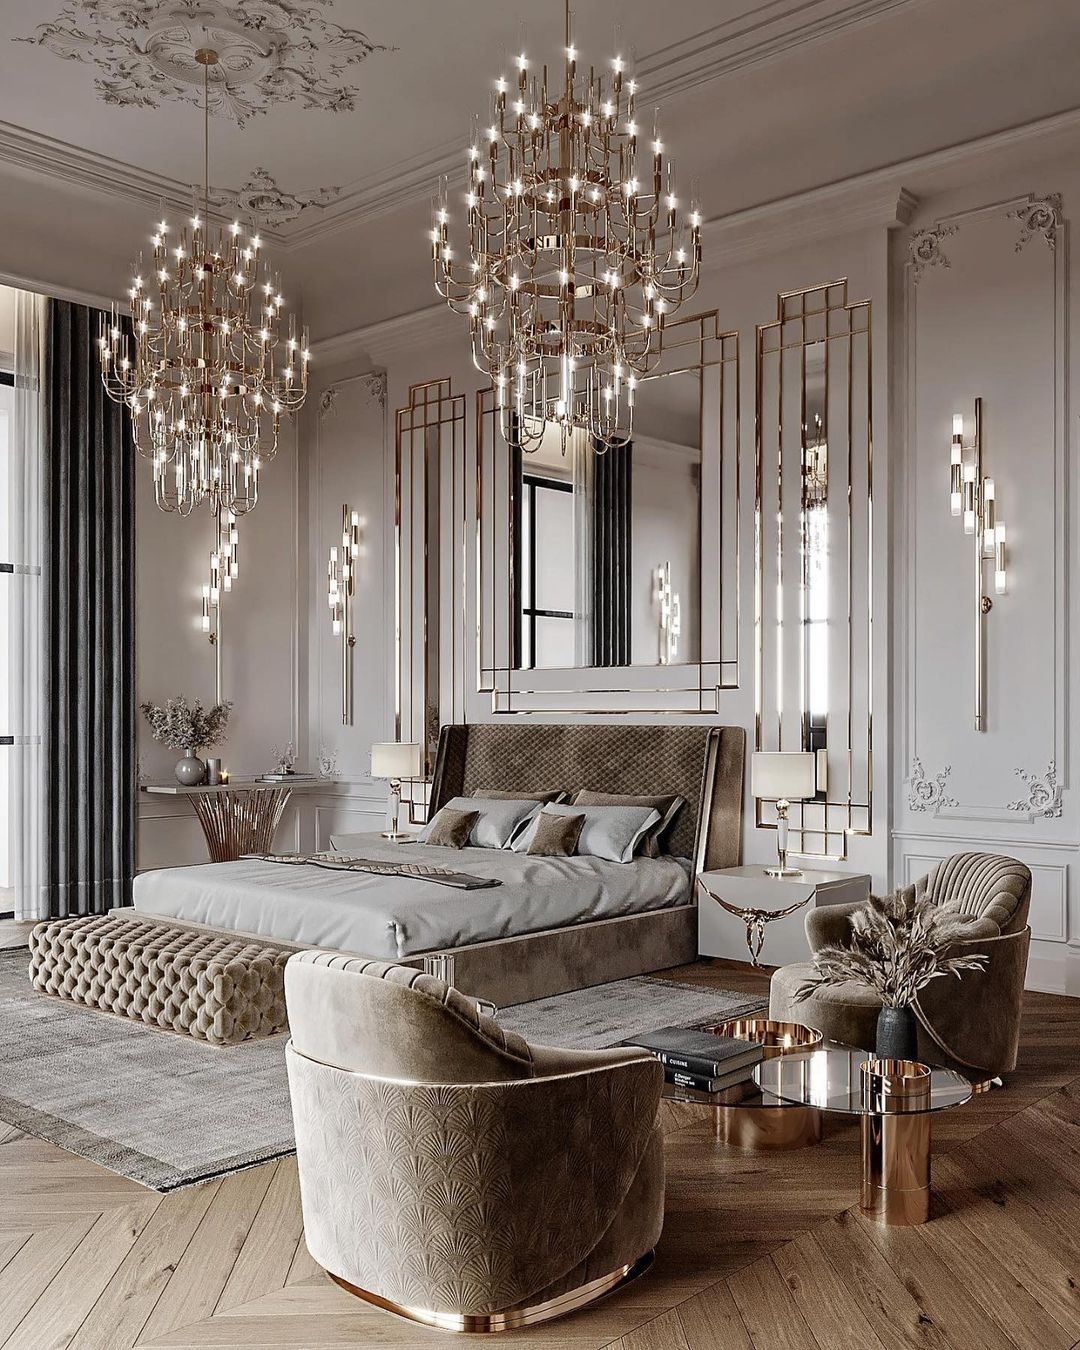 top chandeliers on this bedroom